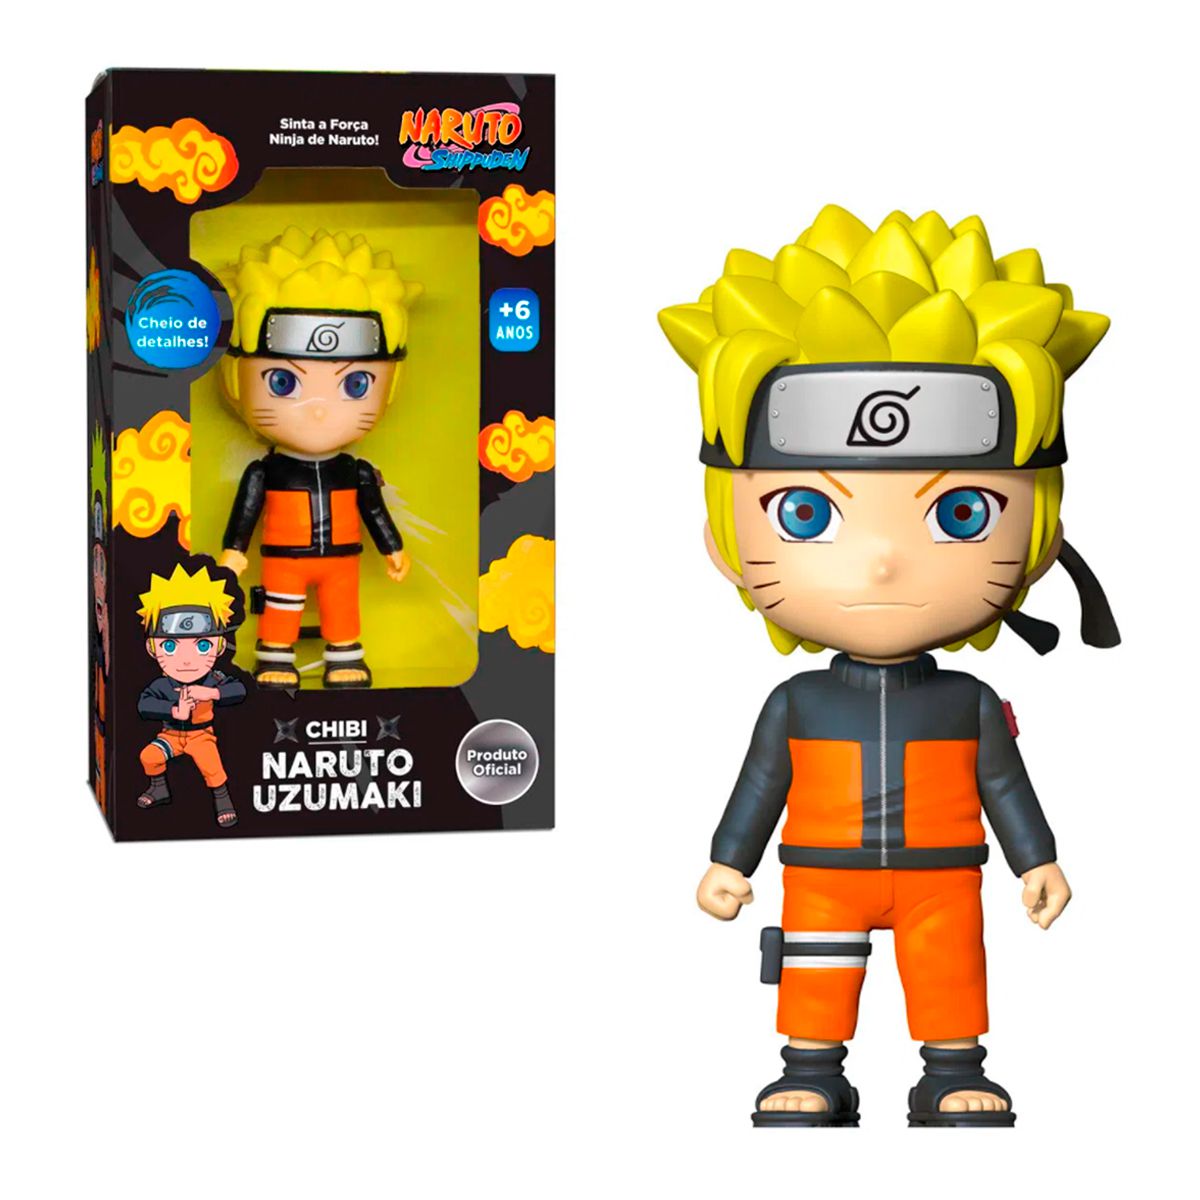 Boneco Do Naruto 8cm, Brinquedo De Ação Anime Naruto Para Crianças